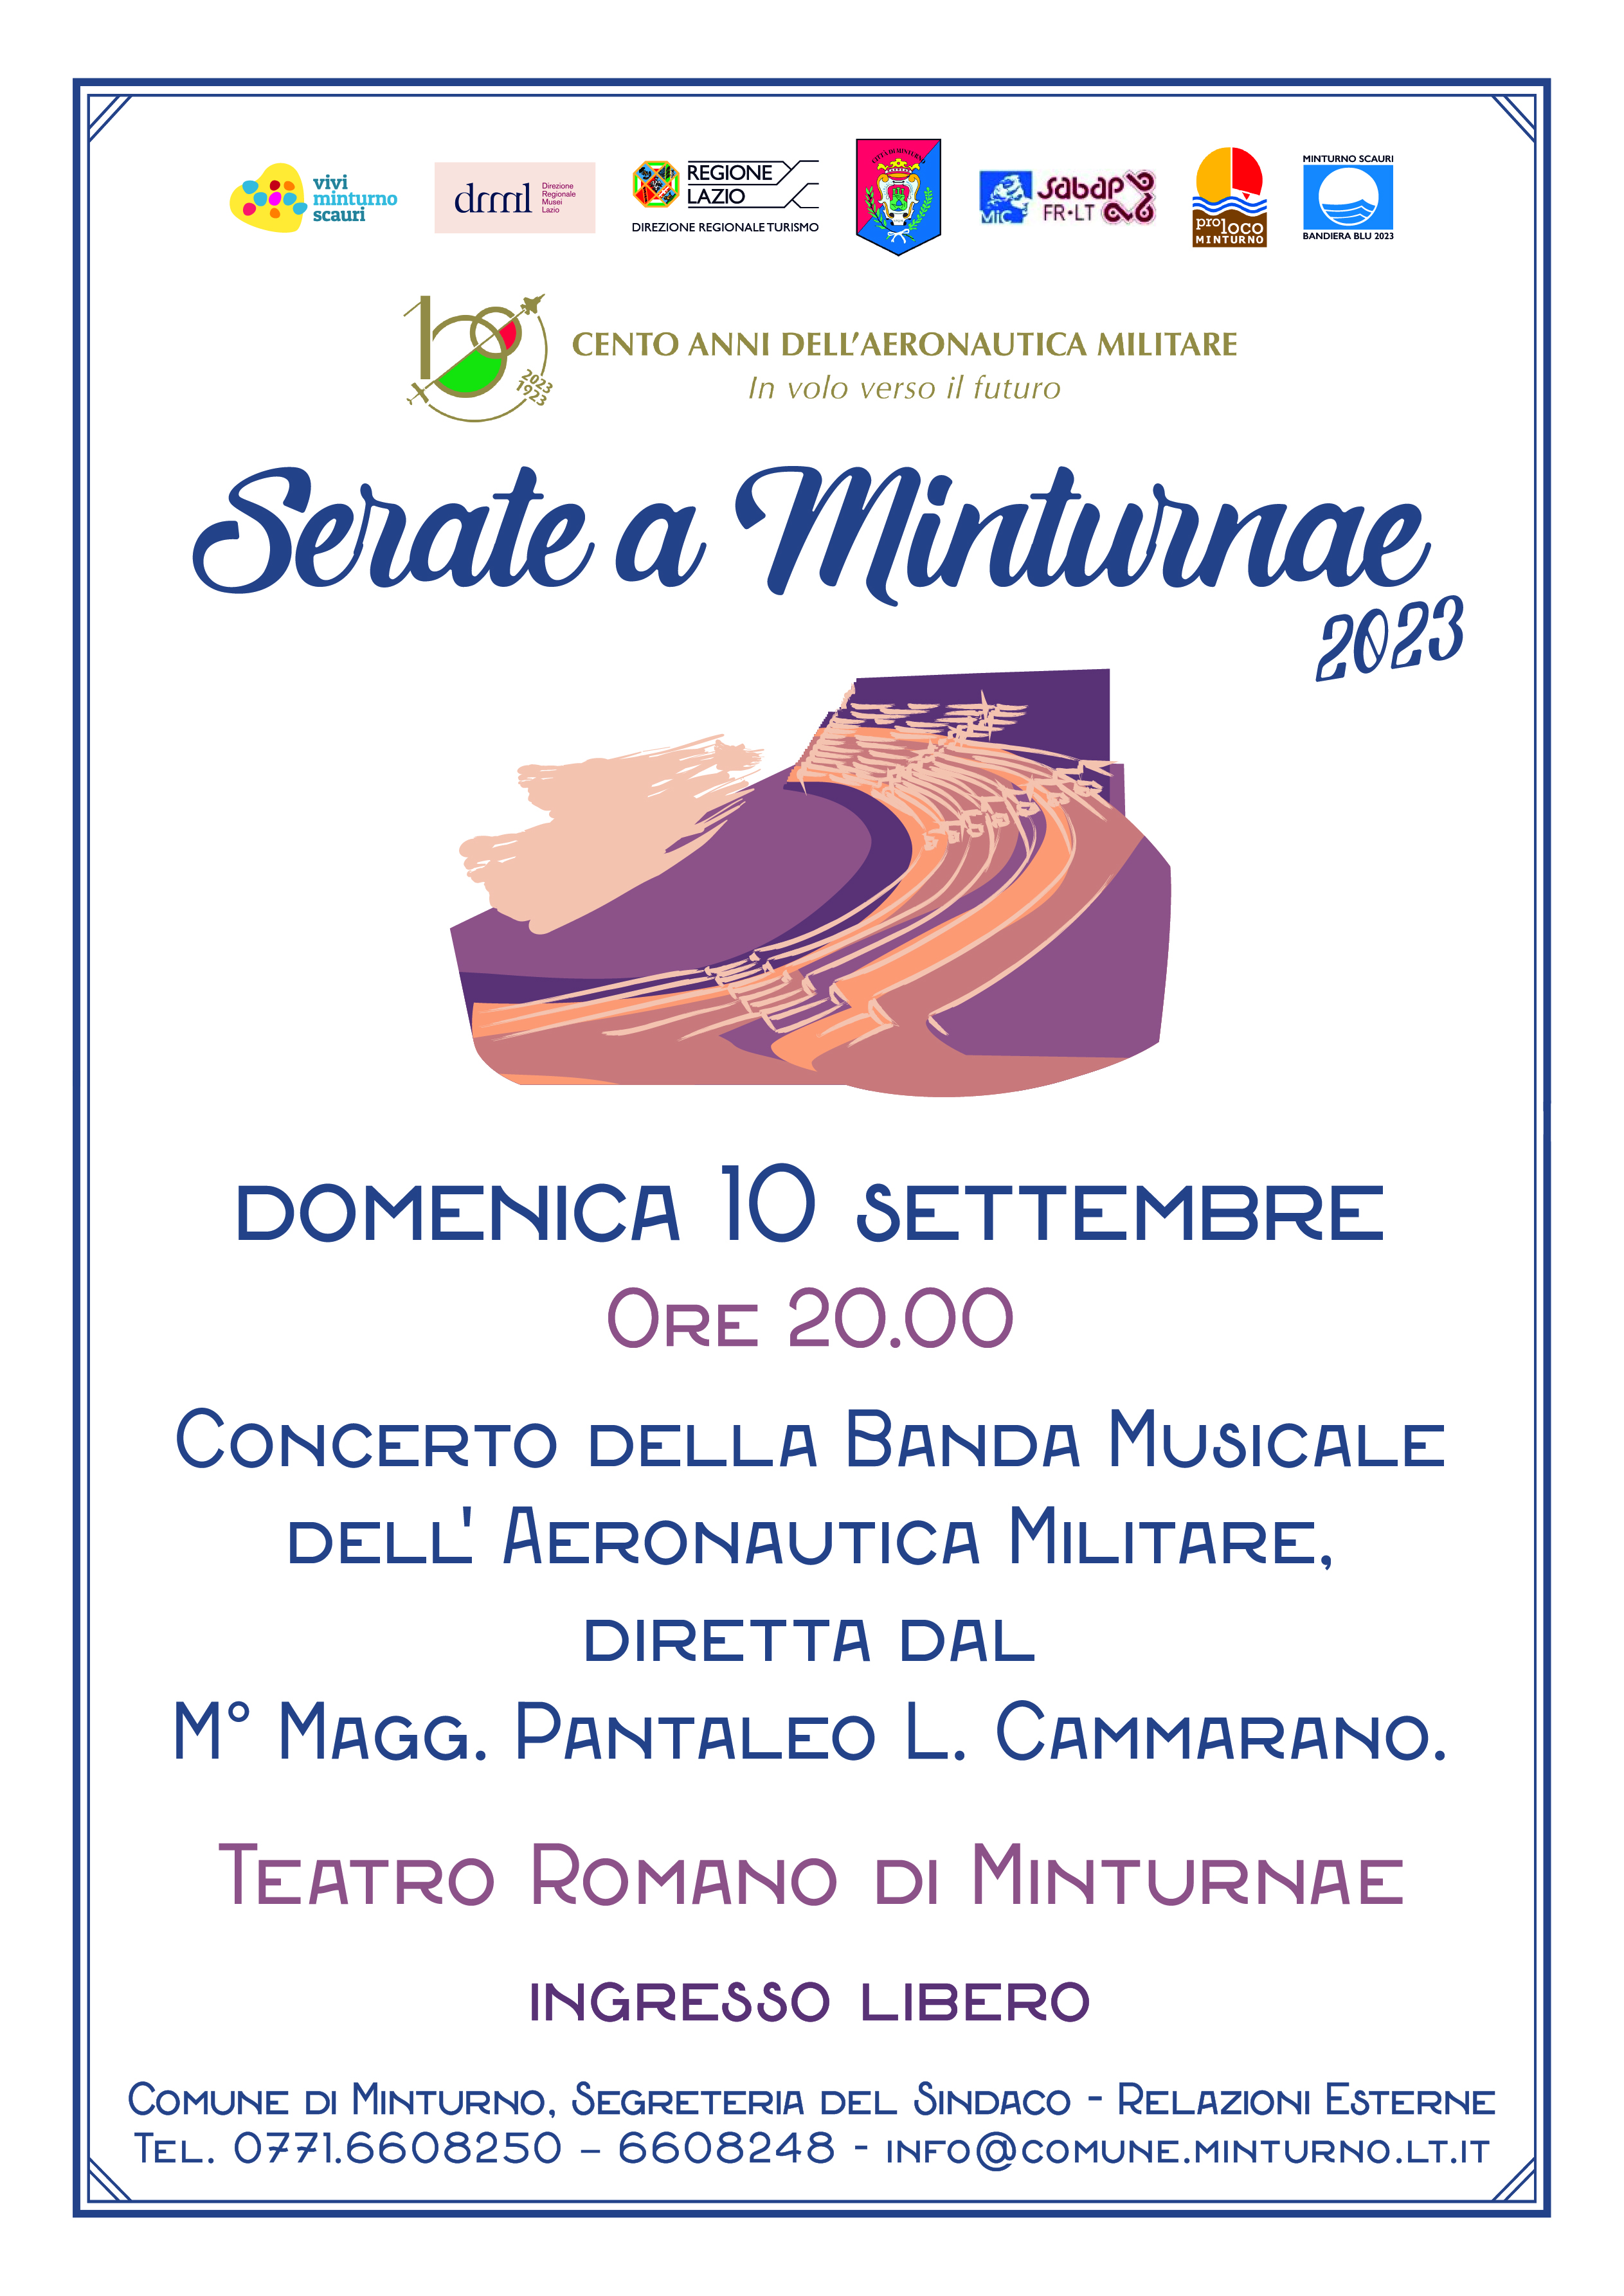 Il 10 settembre a Minturnae il concerto della Banda Musicale dell’Aeronautica Militare